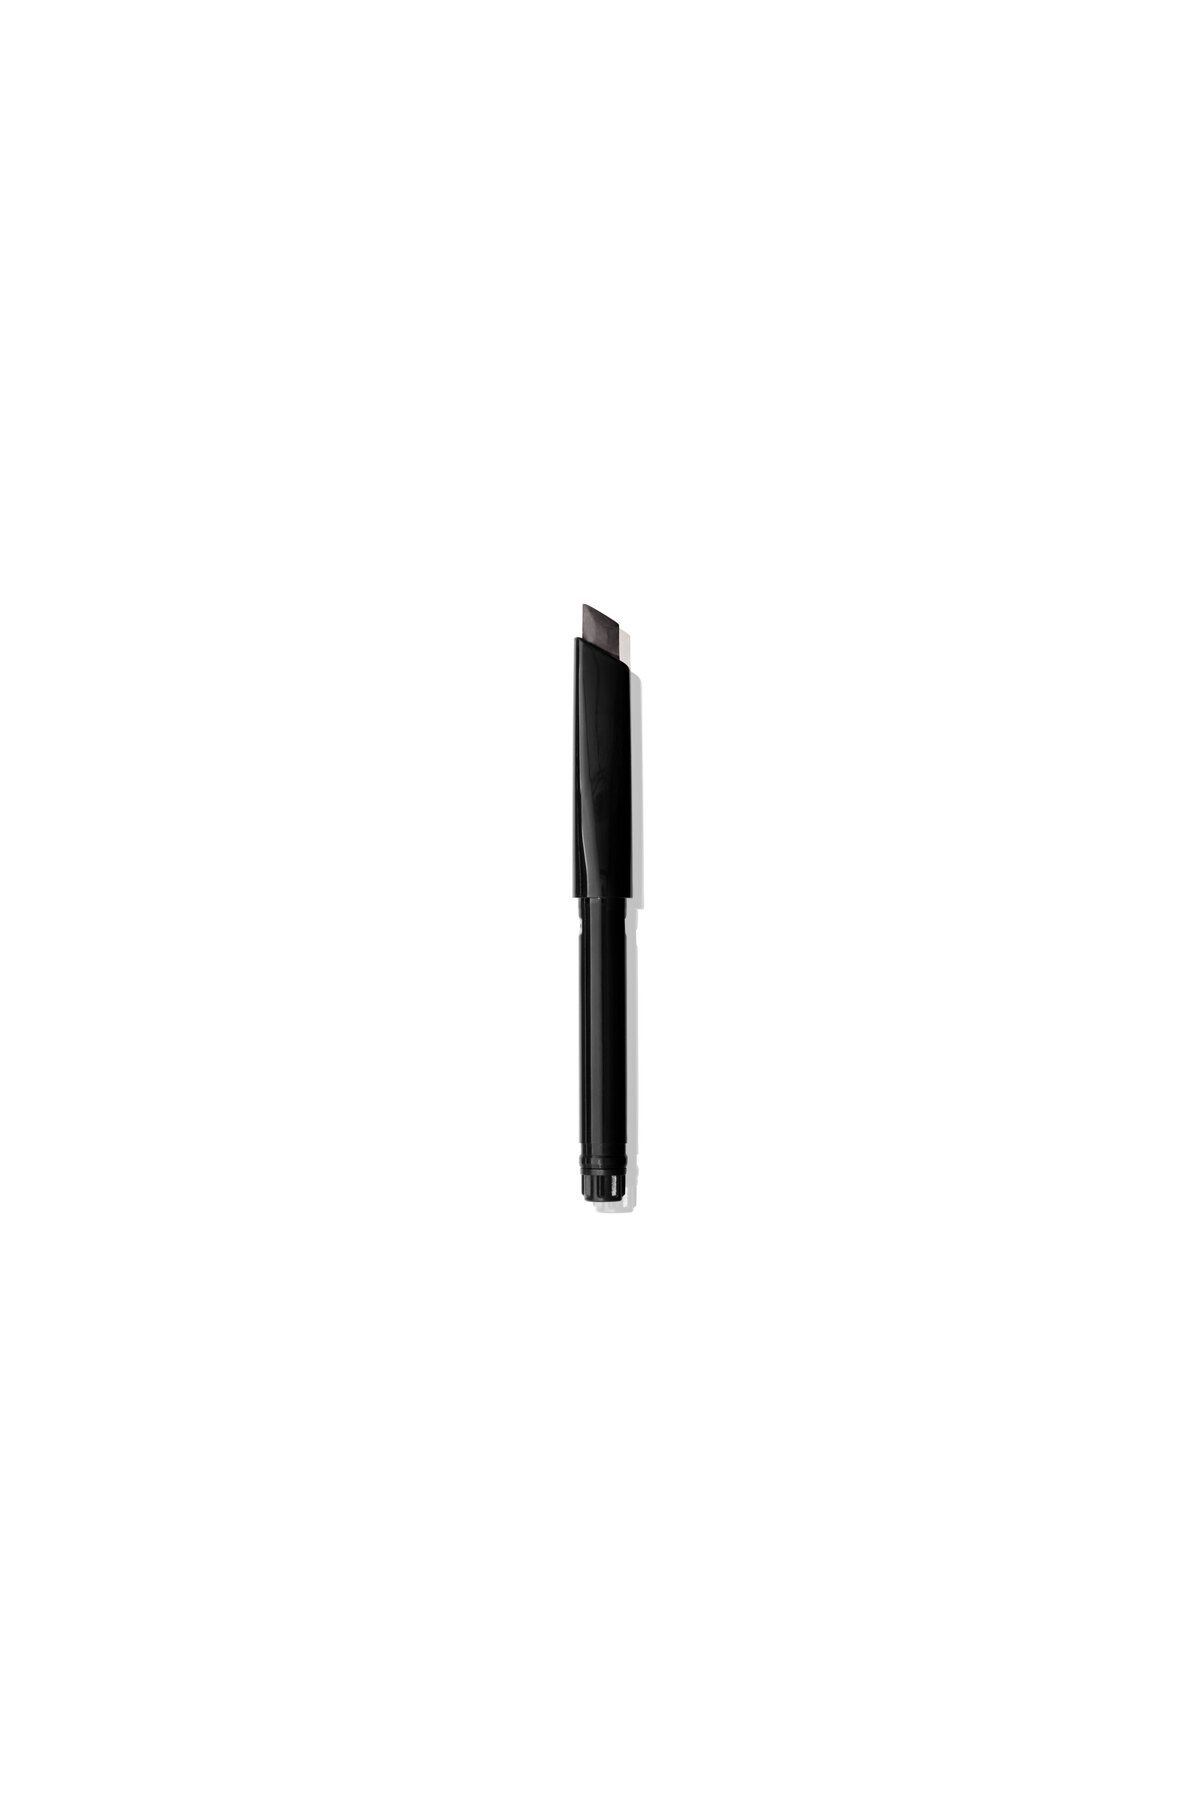 Bobbi Brown Long-Wear Brow Pencil Refill Kaş Kalemi - Soft Black 716170312187 116038